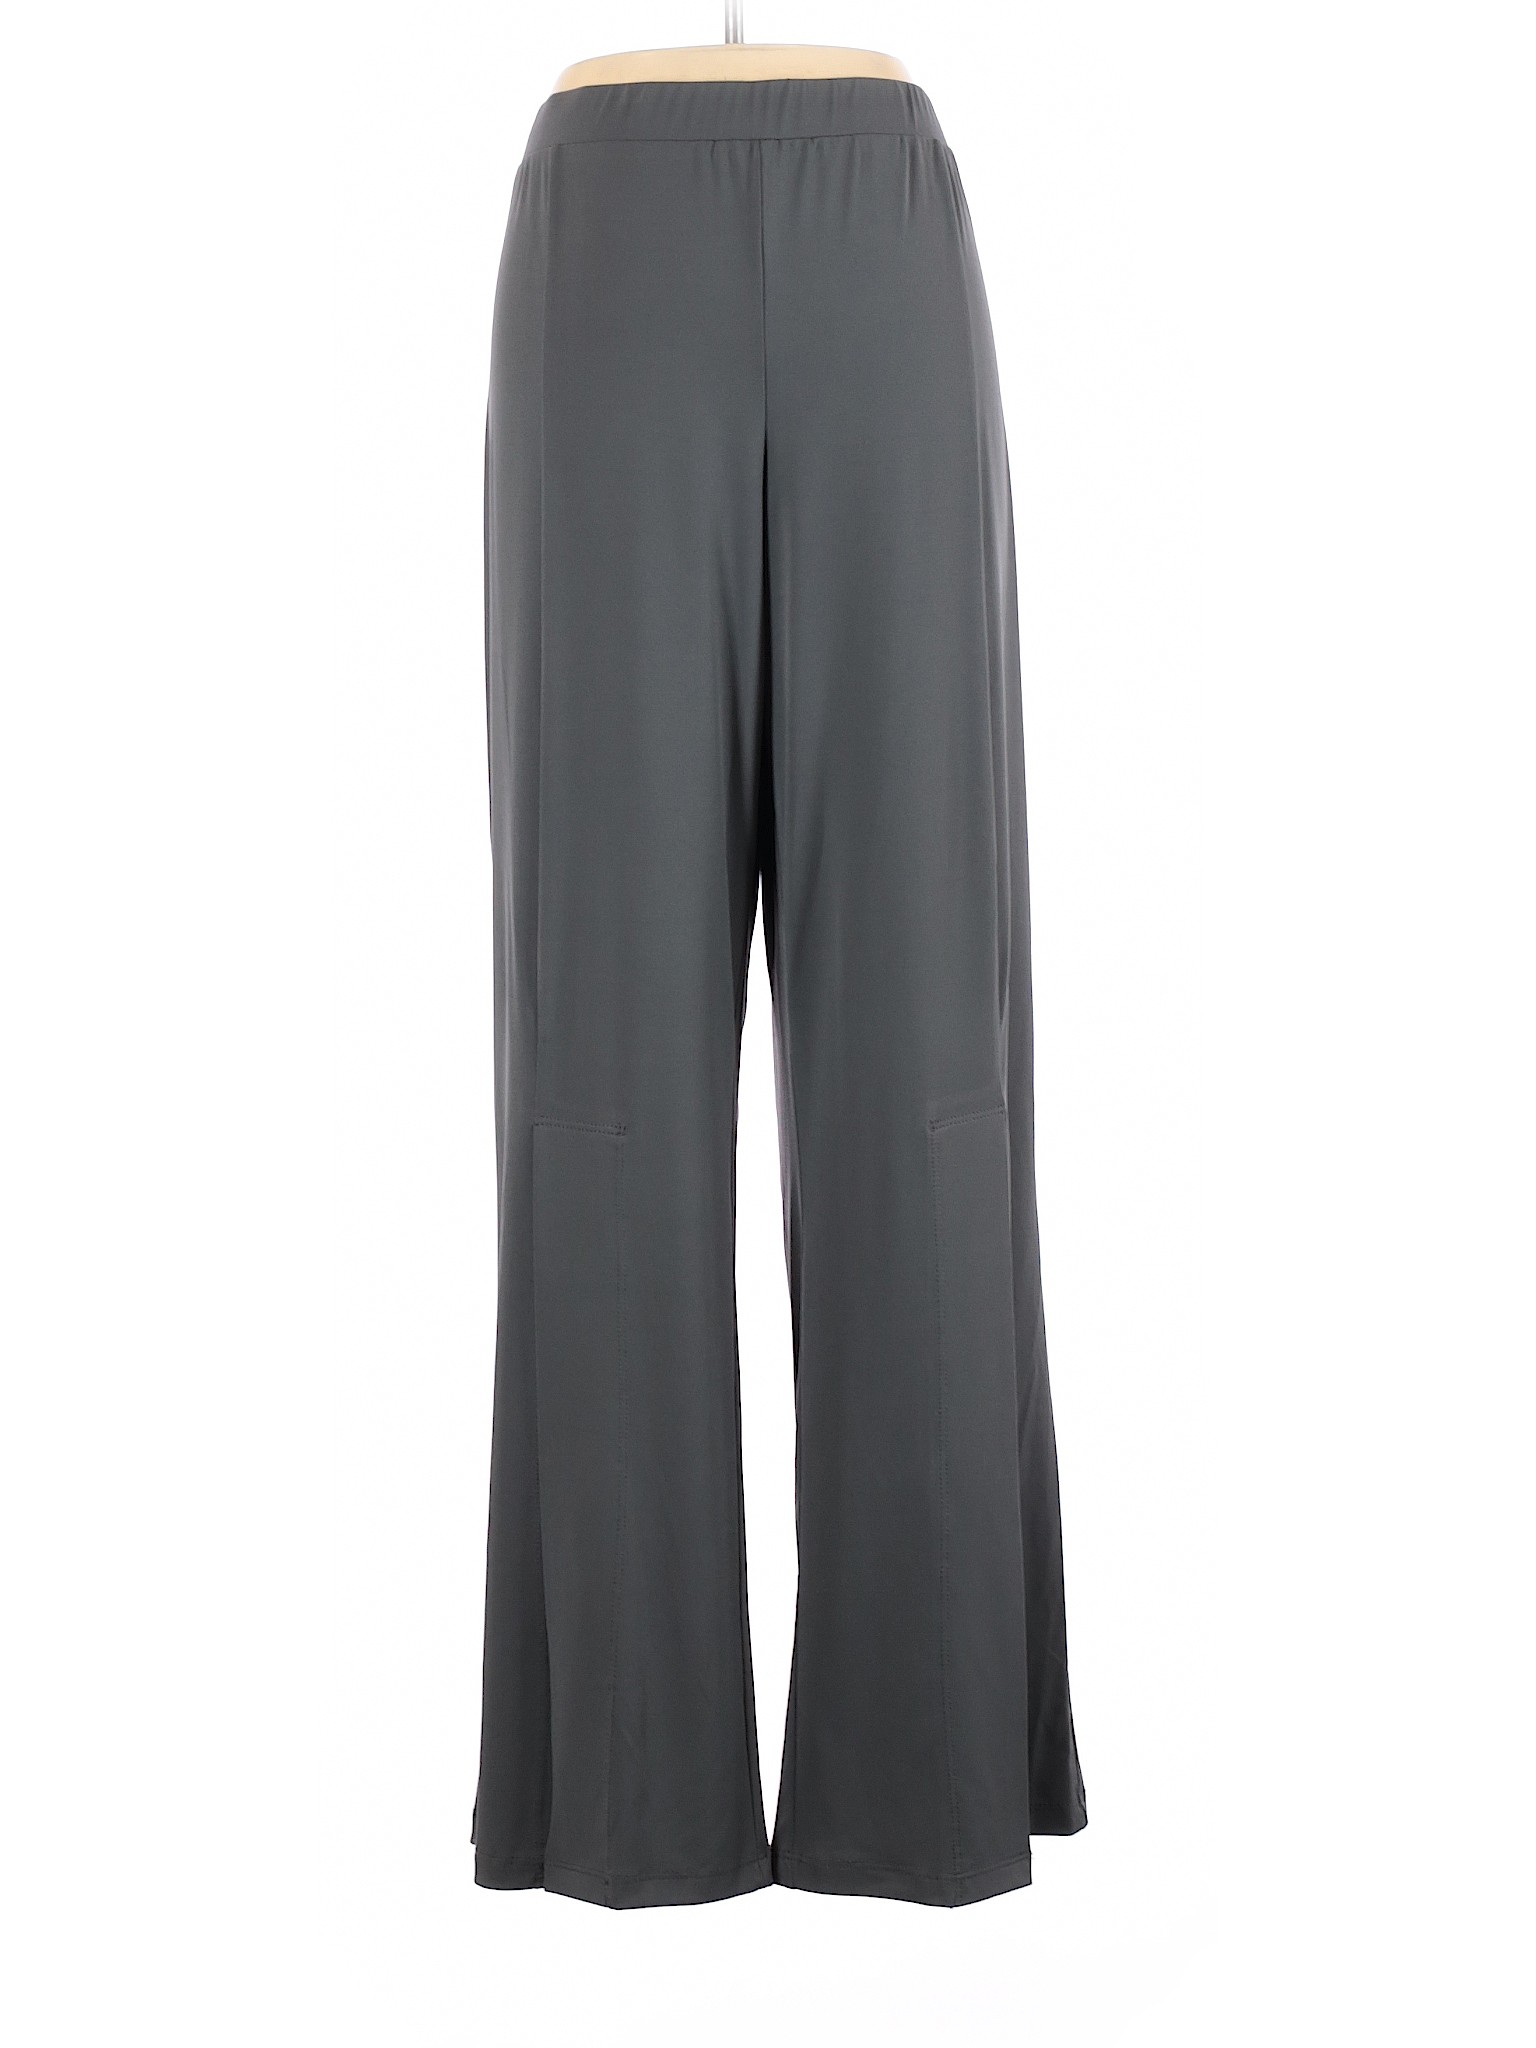 Susan Graver Women Gray Casual Pants XL | eBay